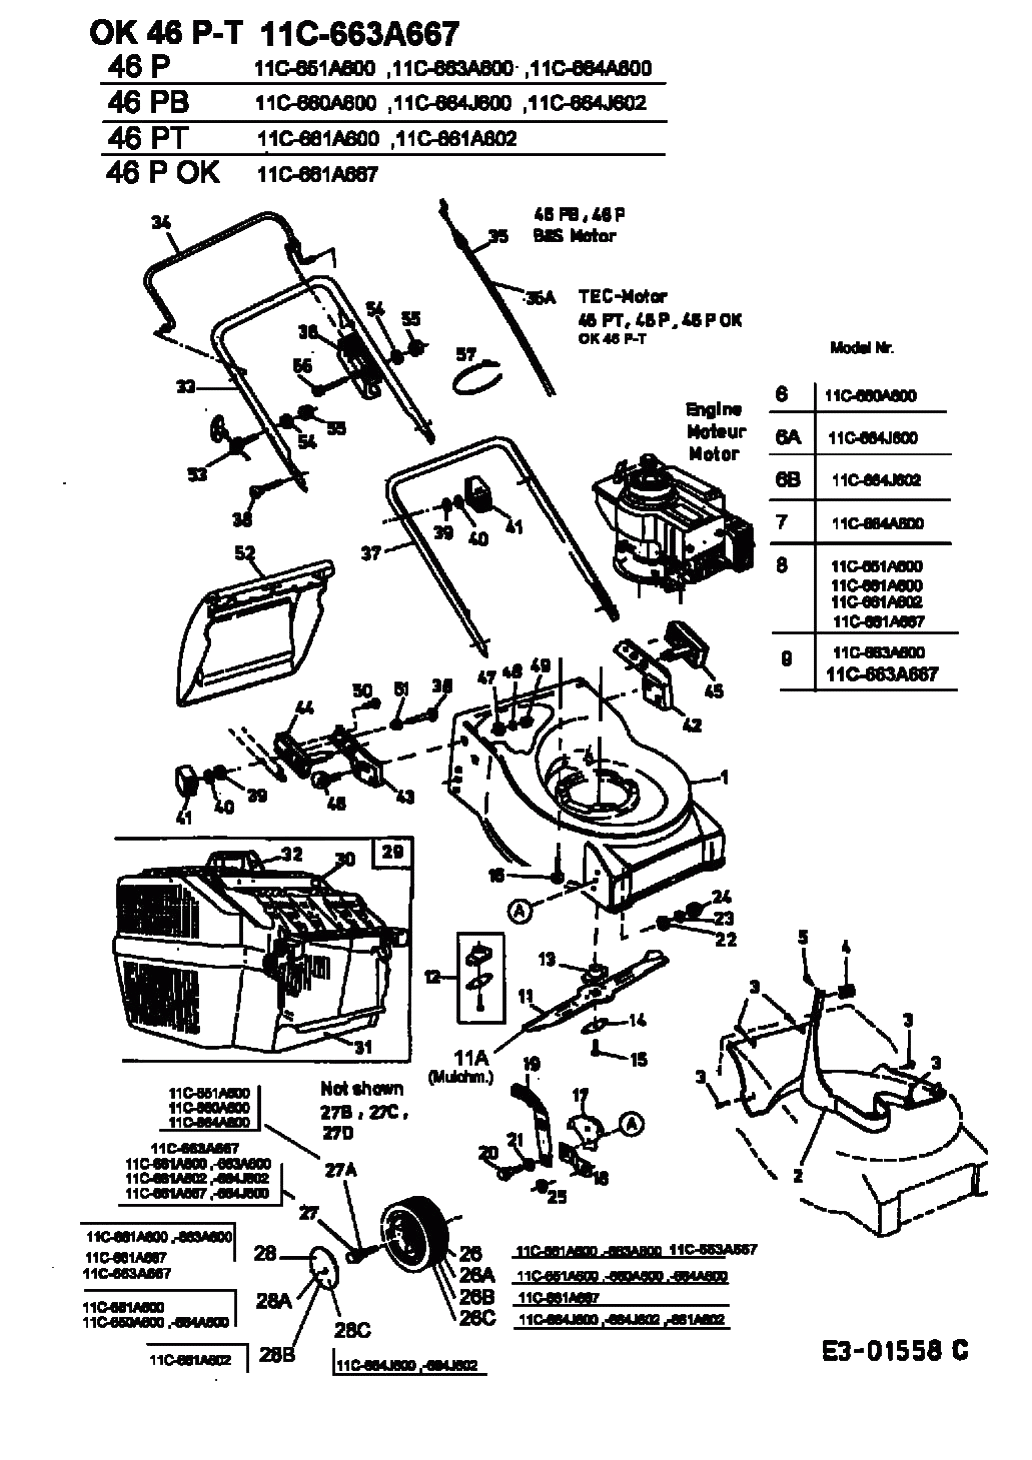 MTD Артикул 11C-664J600 (год выпуска 2003). Основная деталировка